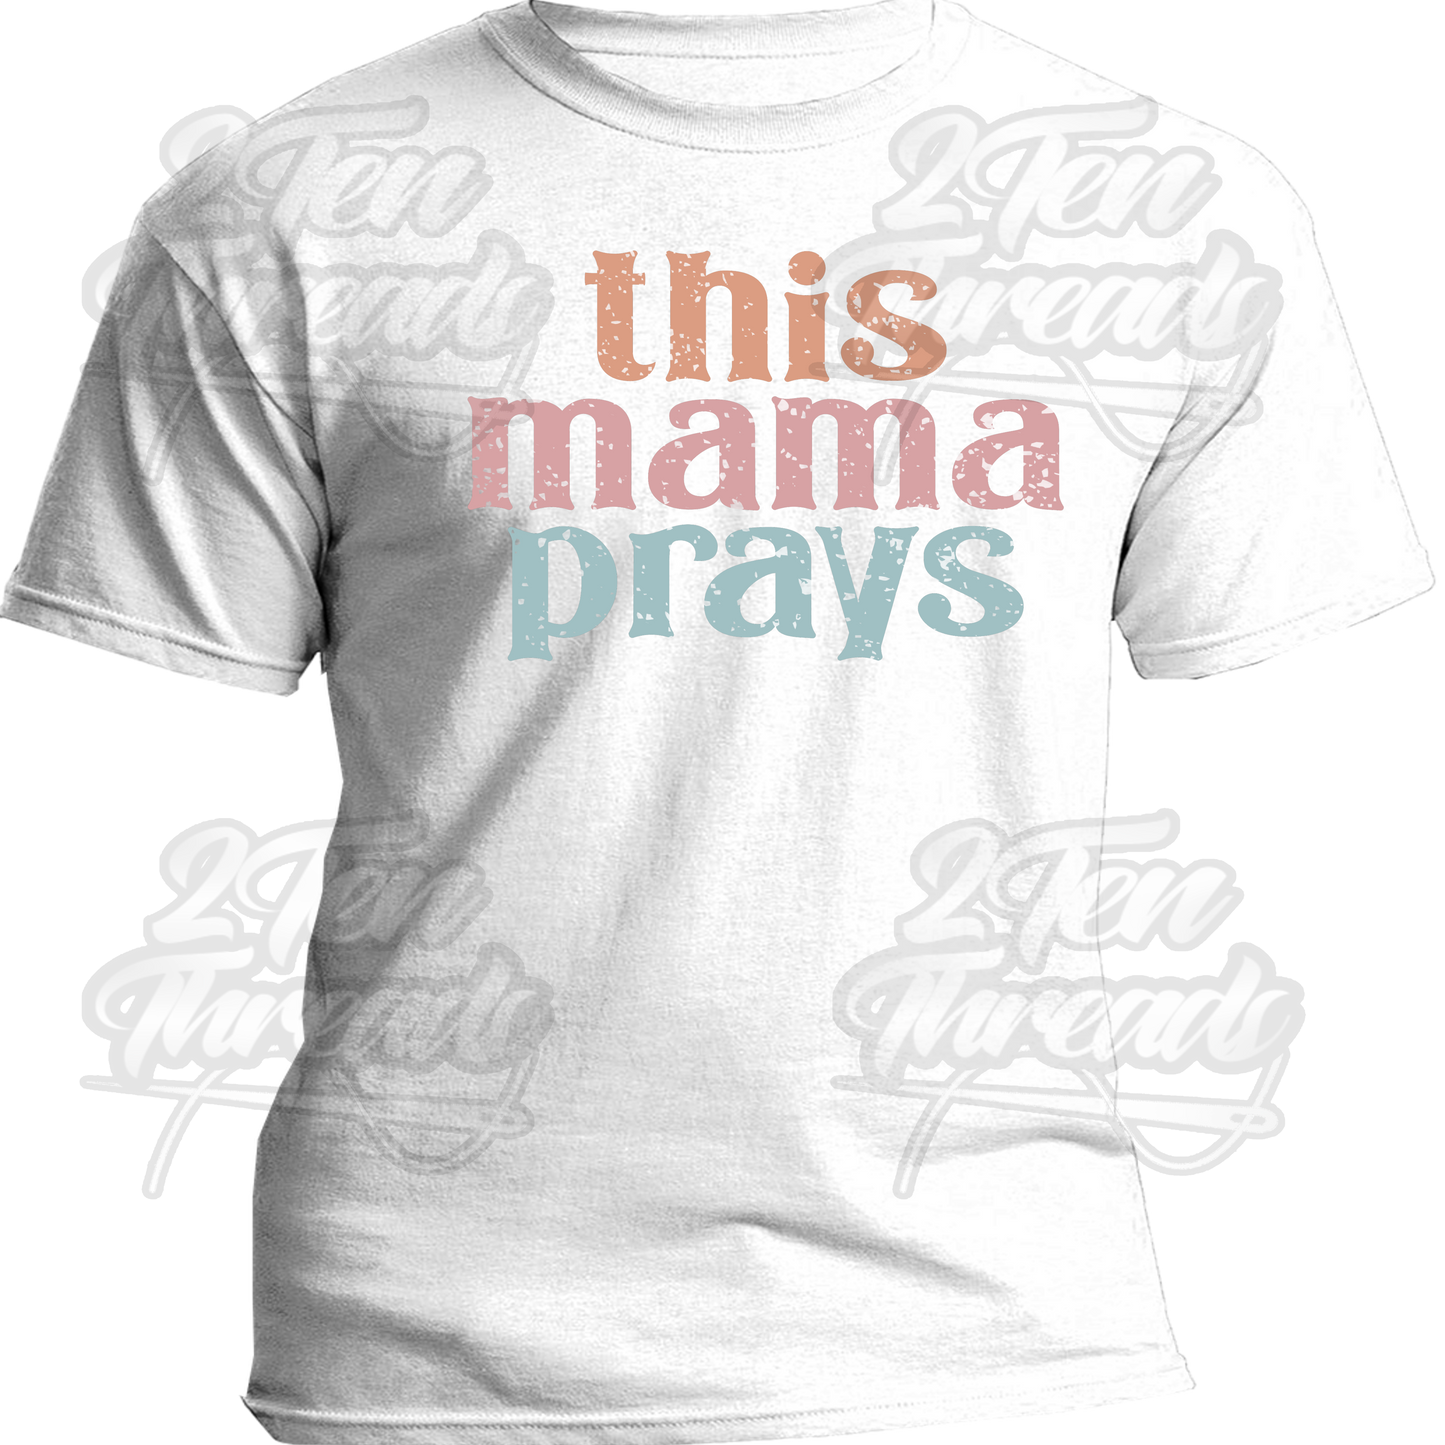 This mama Prays Shirt 2